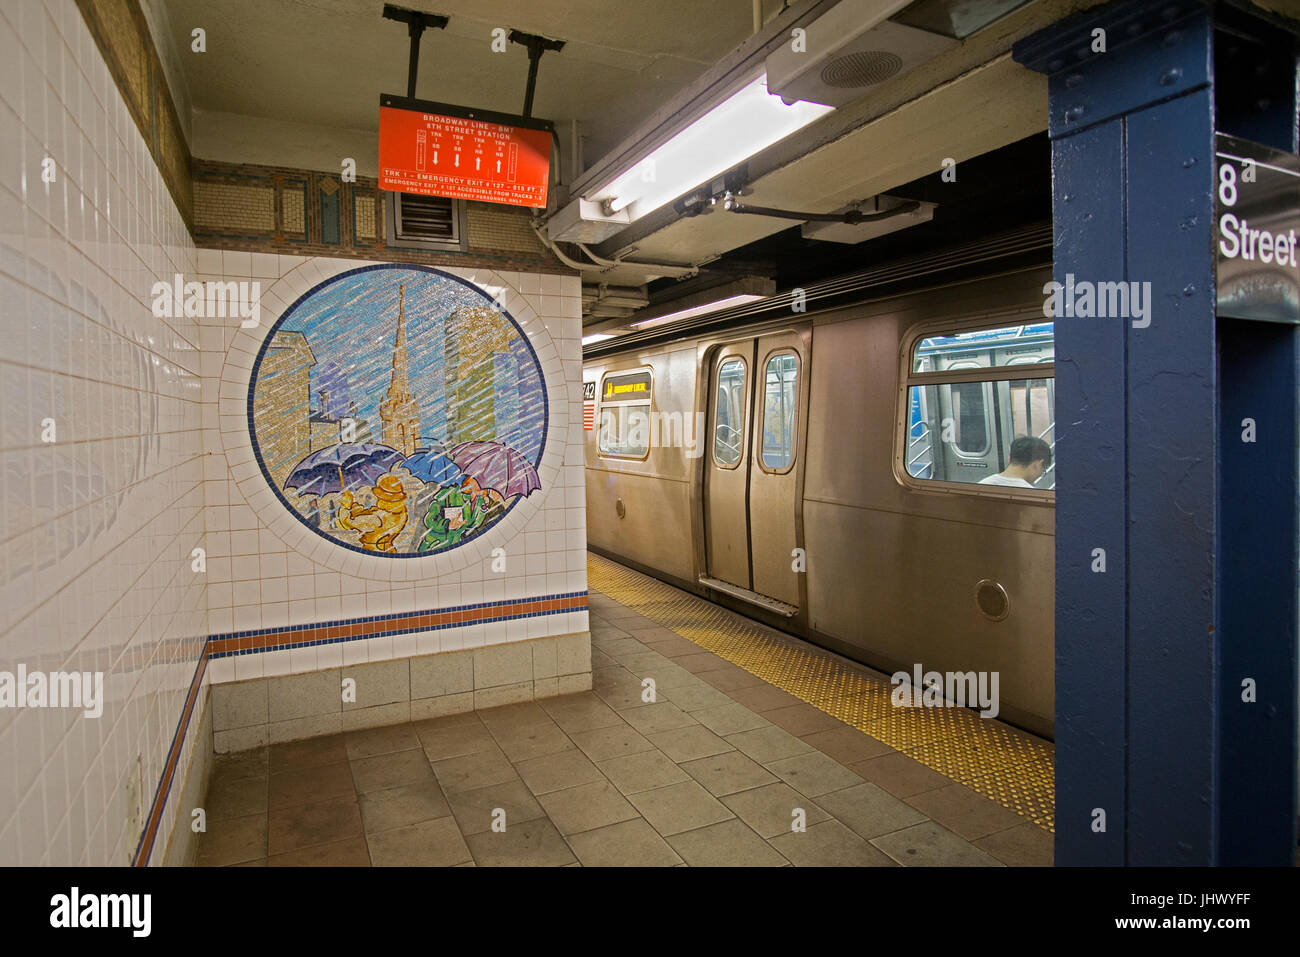 L'art du métro et un train à la 8e Rue gare de la R et N lignes sur Broadway et la 8e Rue à Greenwich Village à New York. Banque D'Images